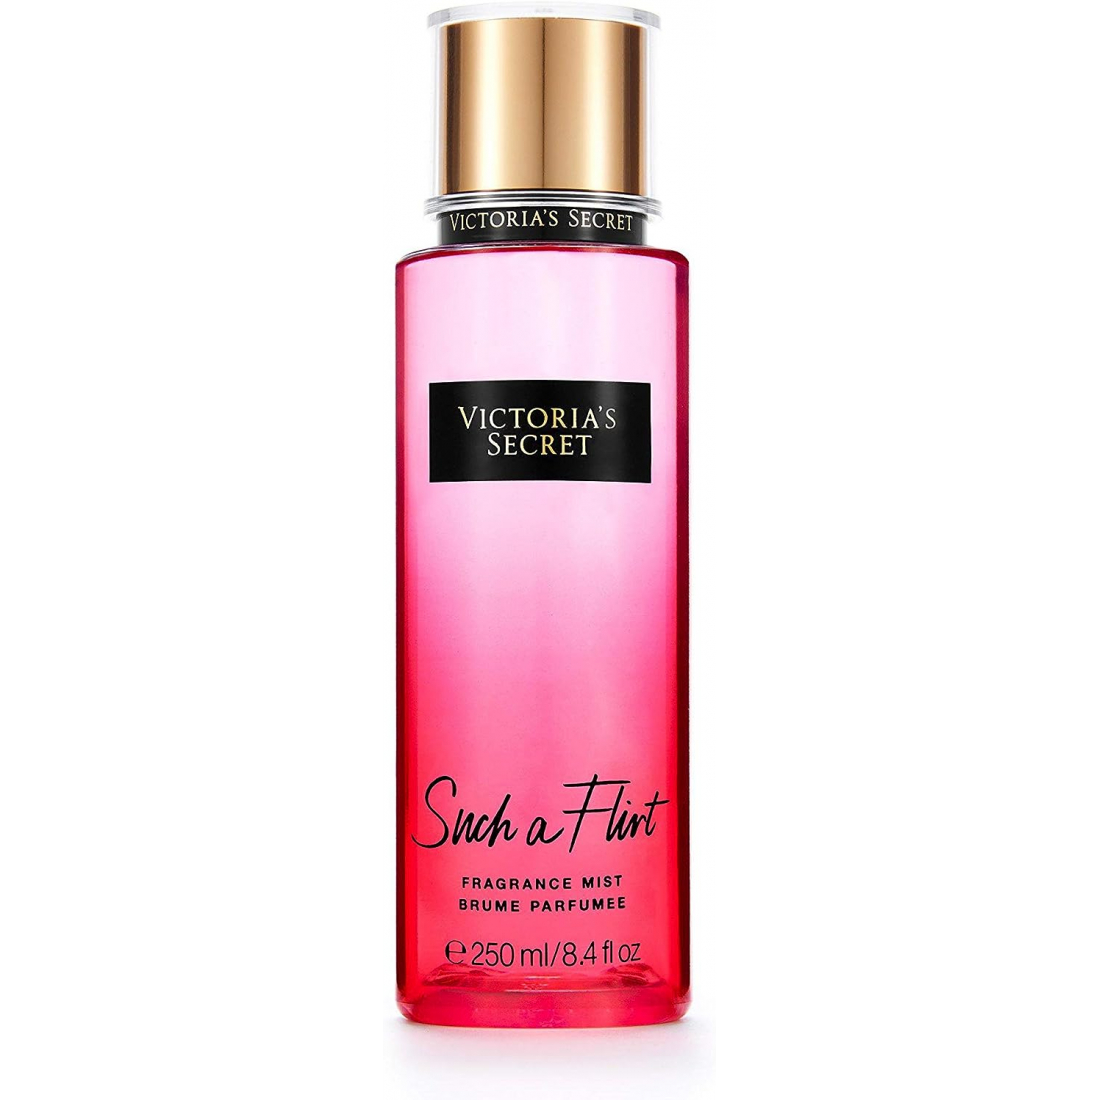 Brume de parfum 'Such A Flirt' - 250 ml